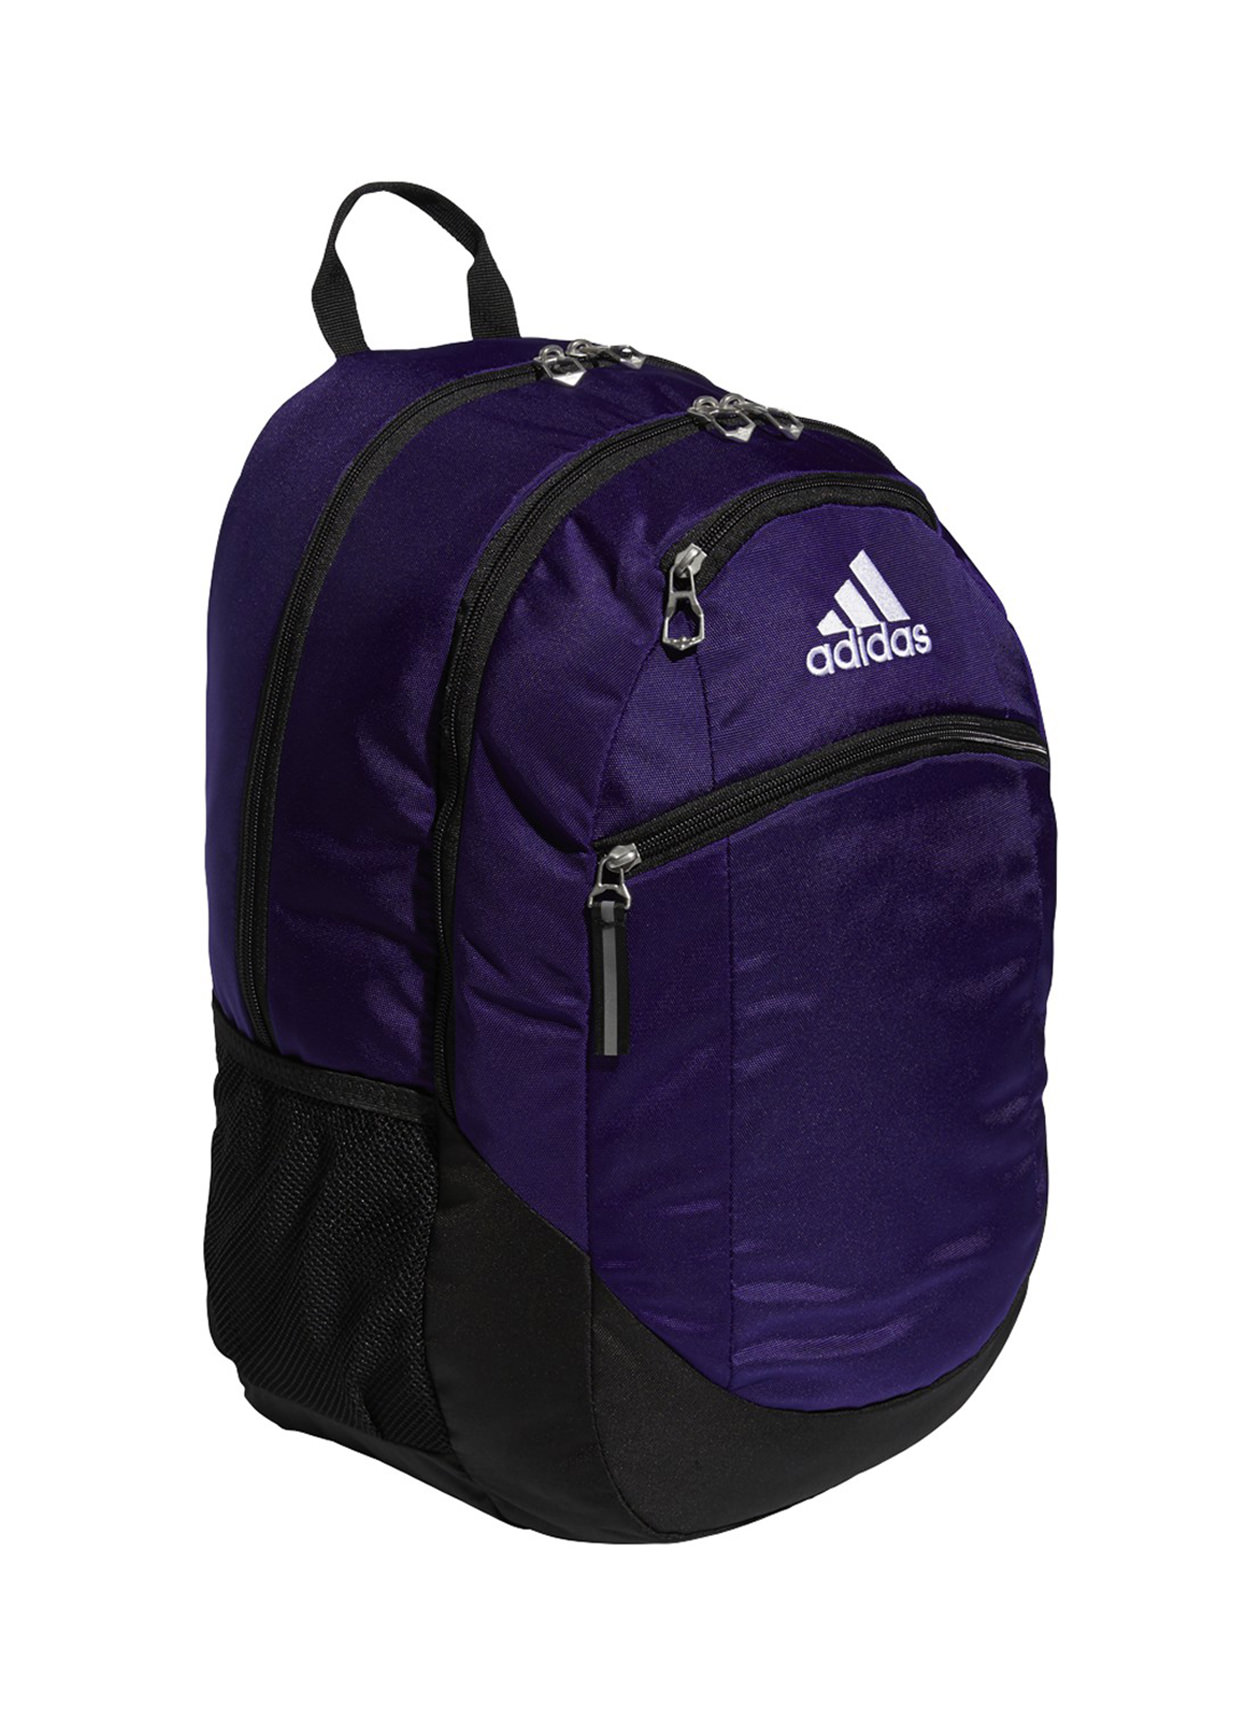 Adidas Collegiate Purple Striker II Team Backpack